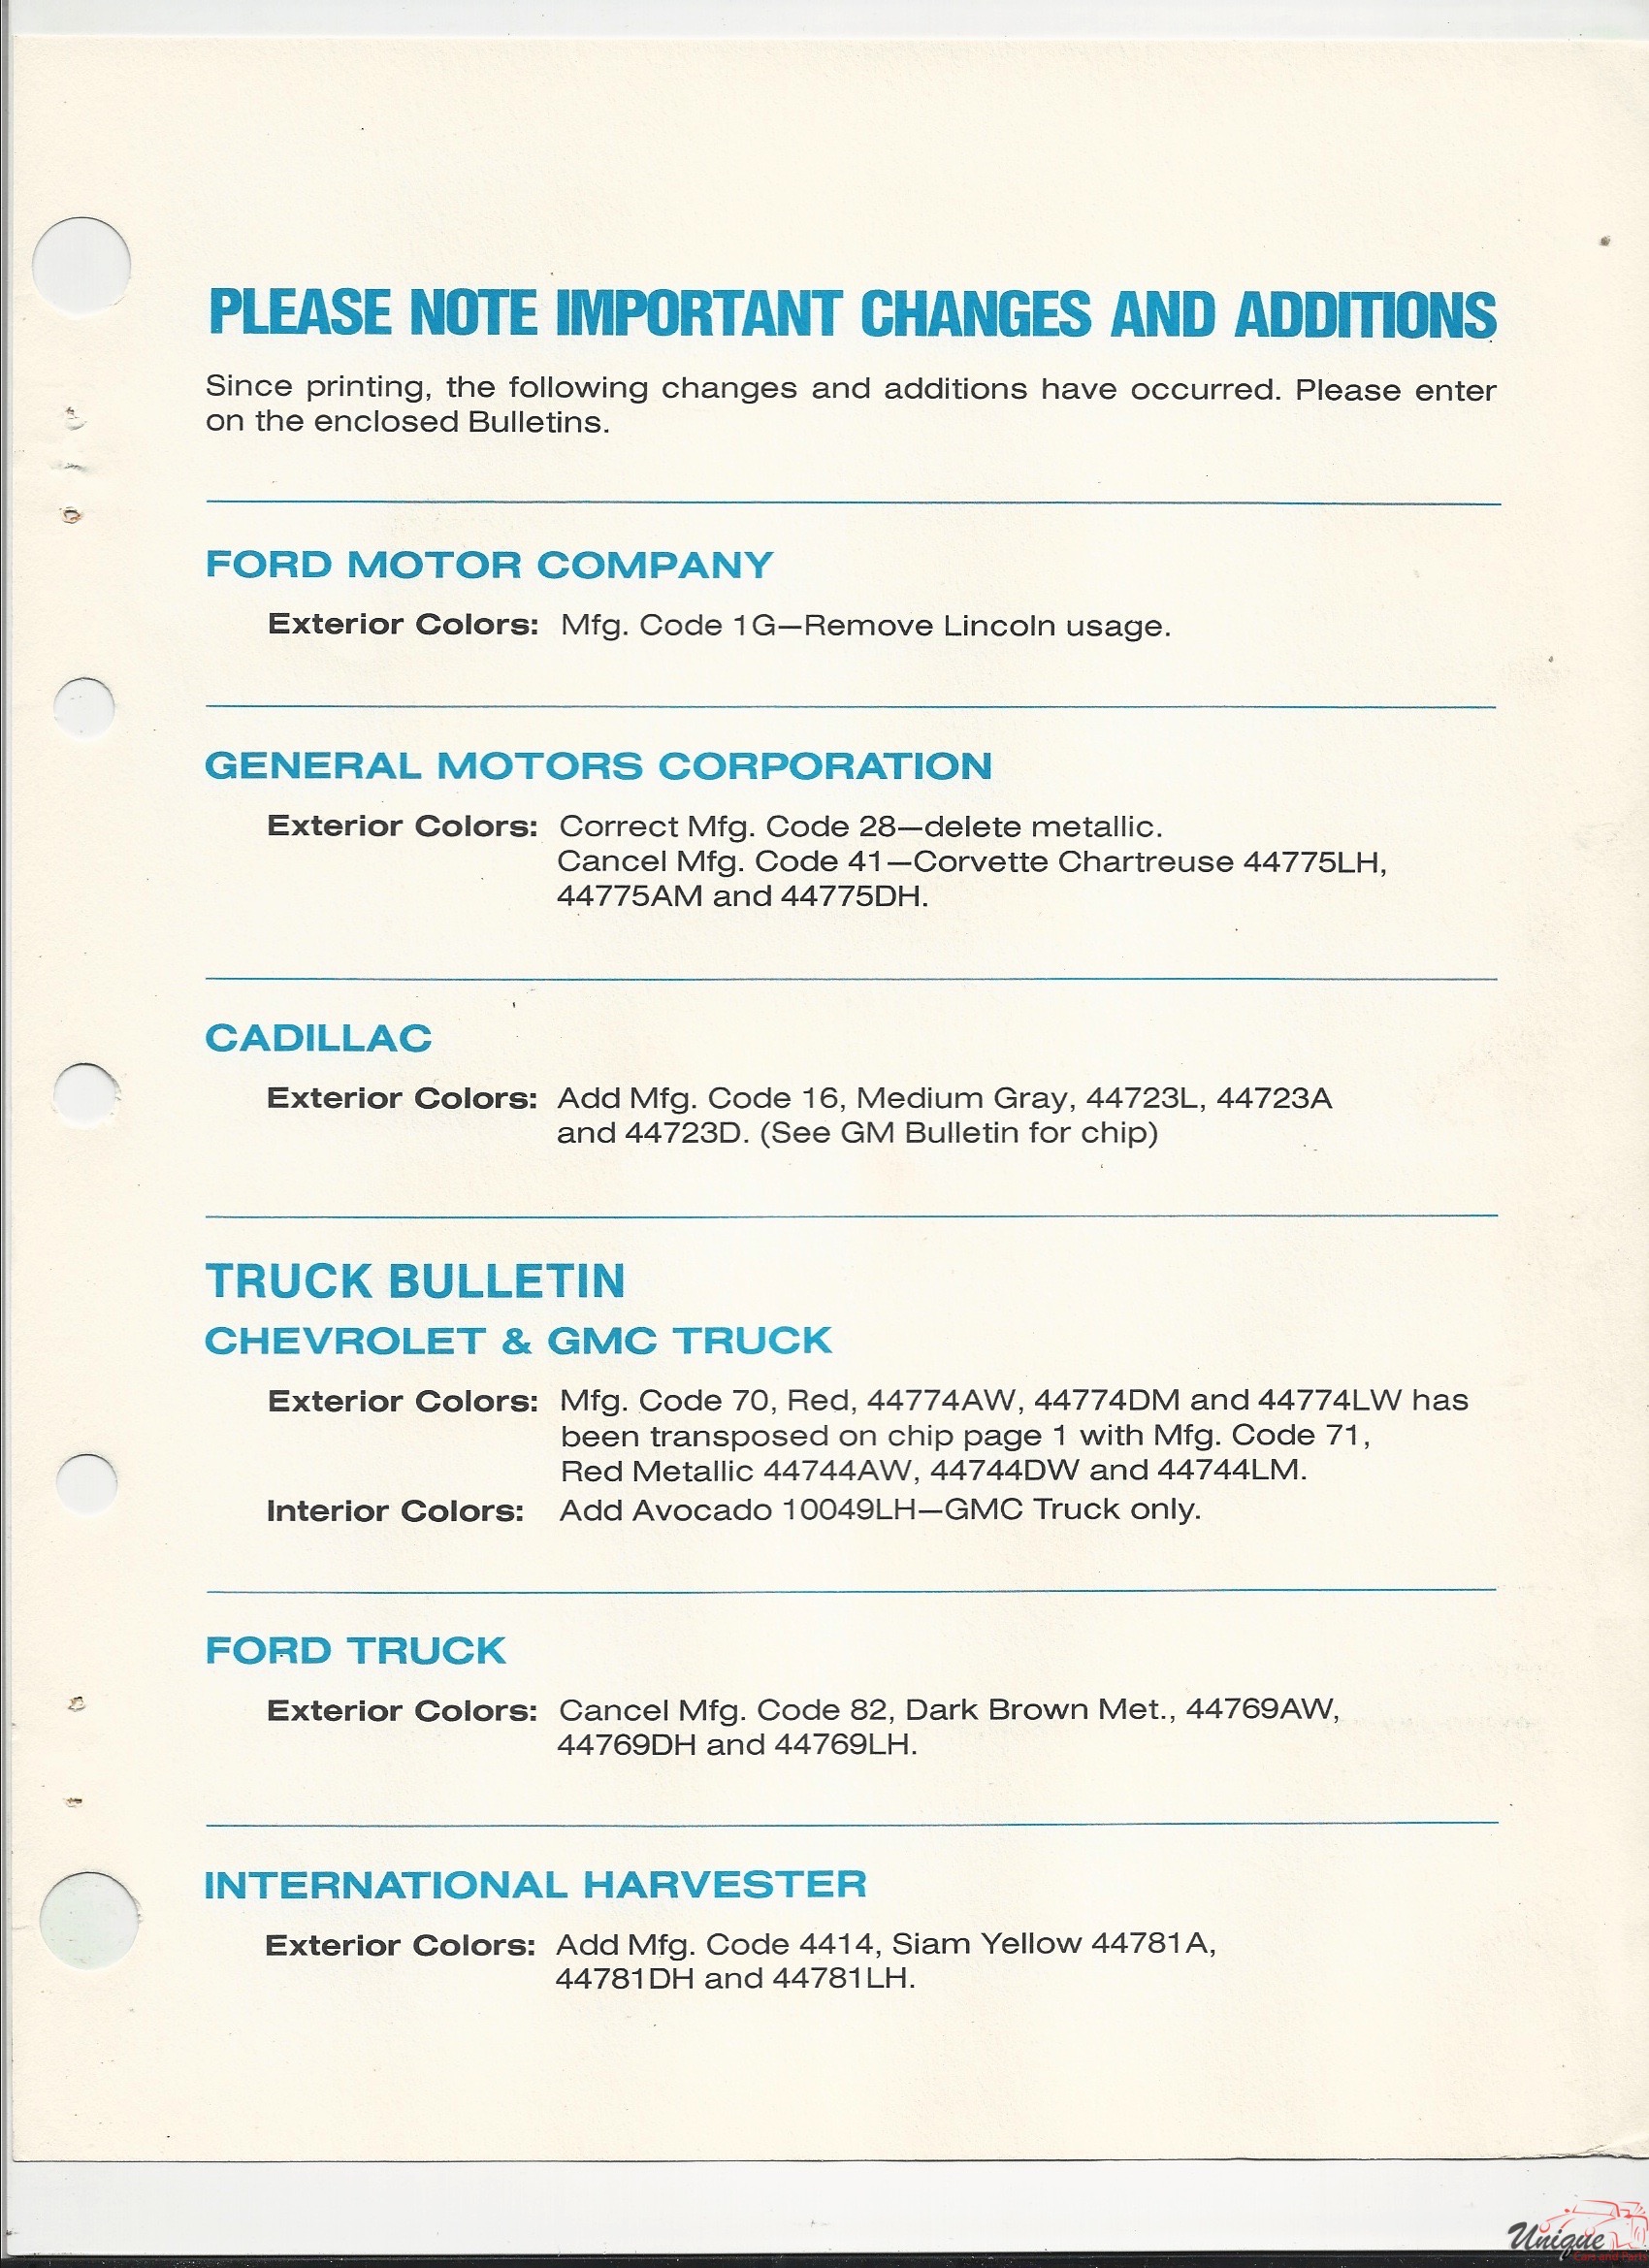 1977 AMC-1 Paint Charts